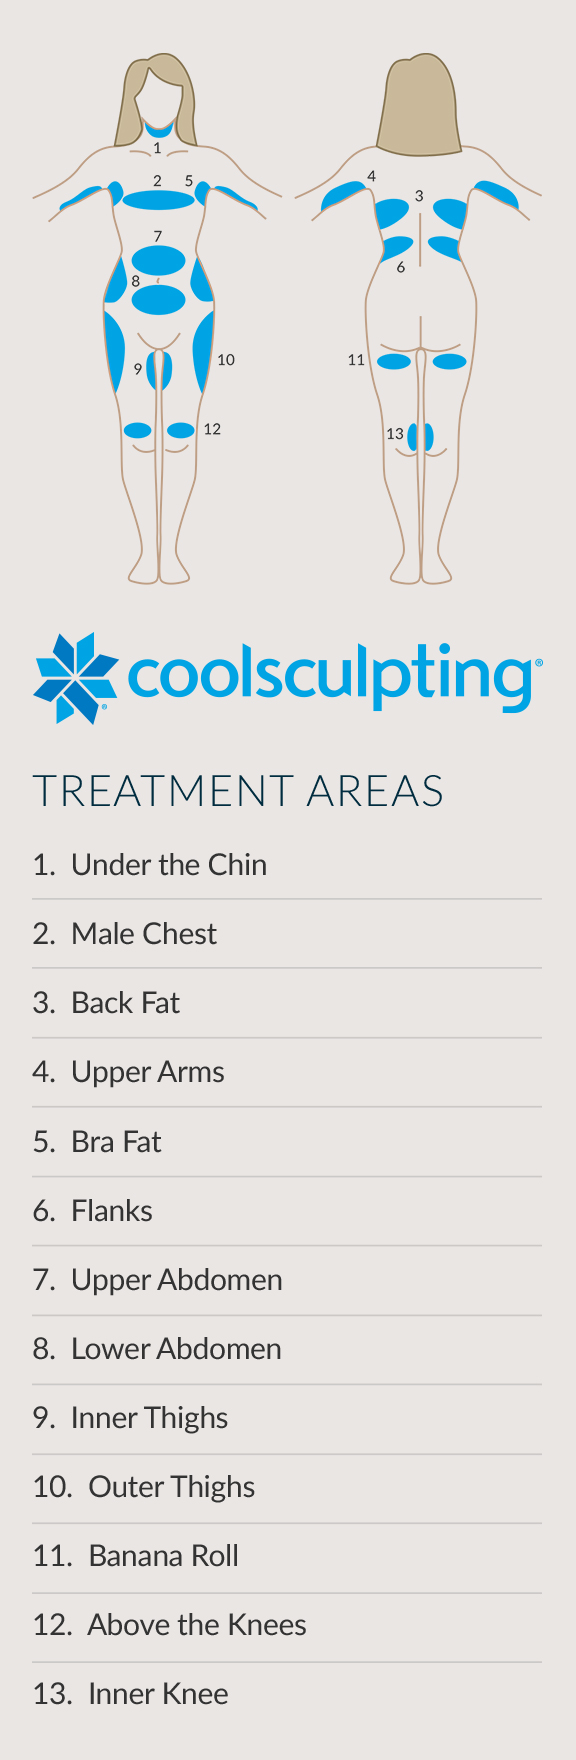 CoolSculpting-behandlingsområden